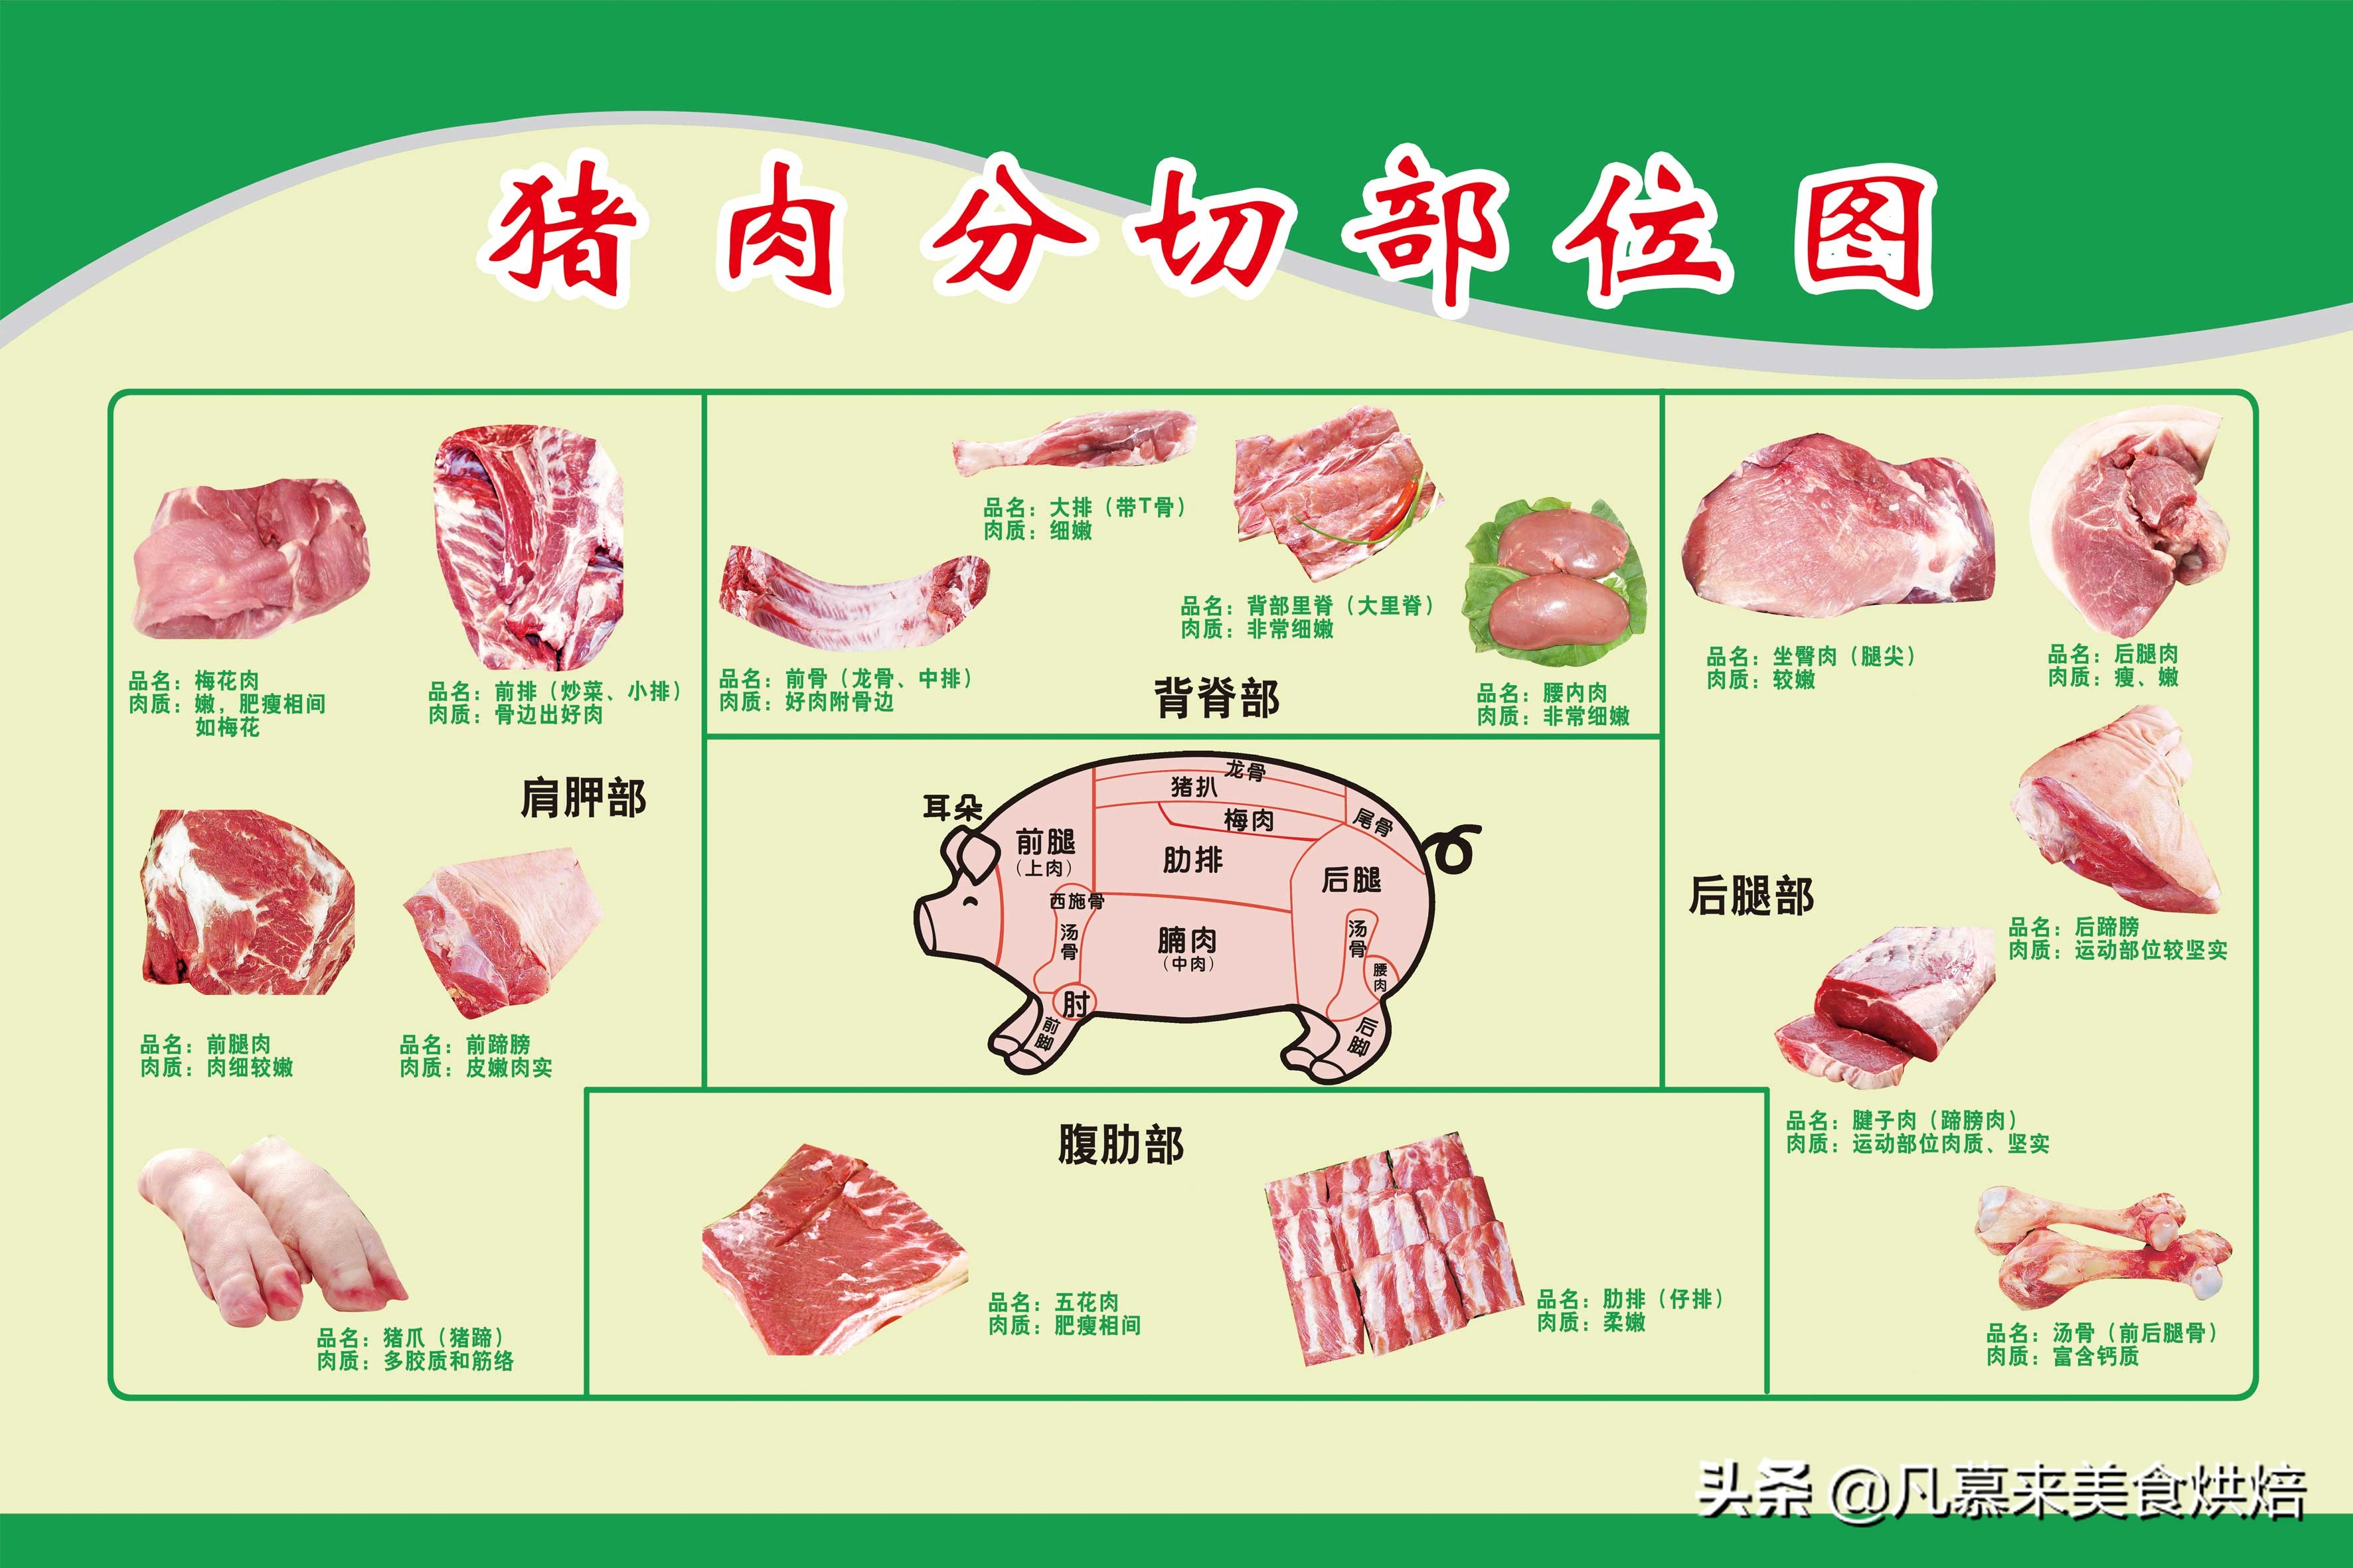 猪肉分割图以及各部分特点及用途